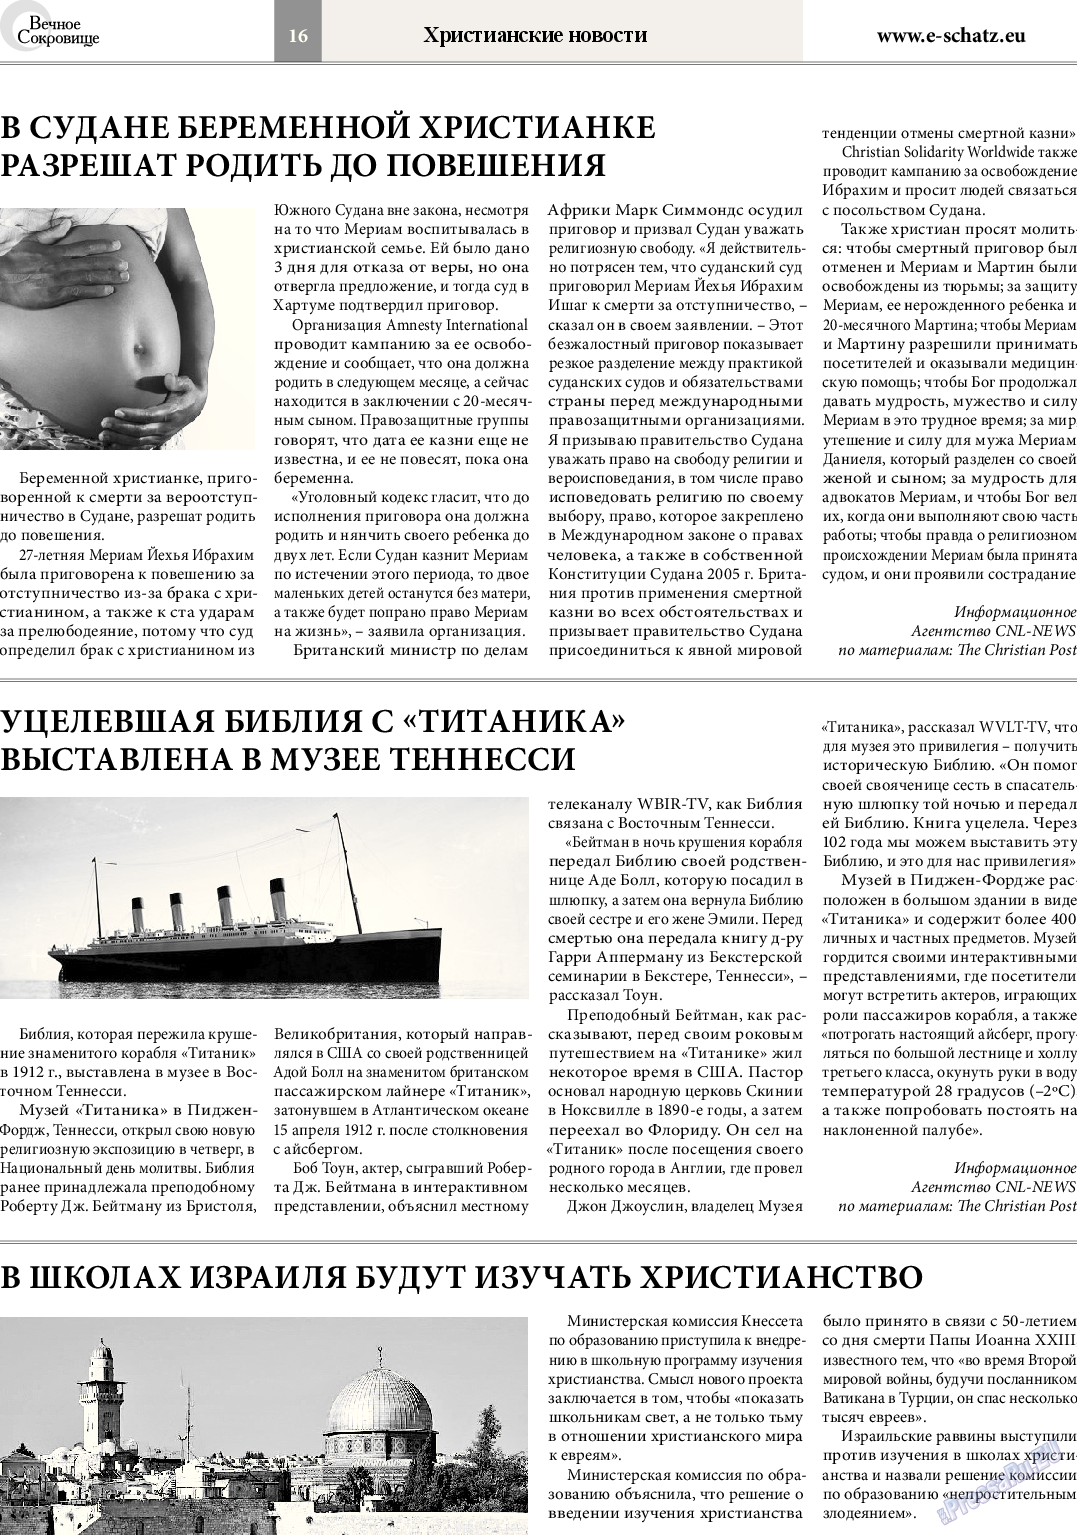 Вечное сокровище, газета. 2014 №3 стр.16